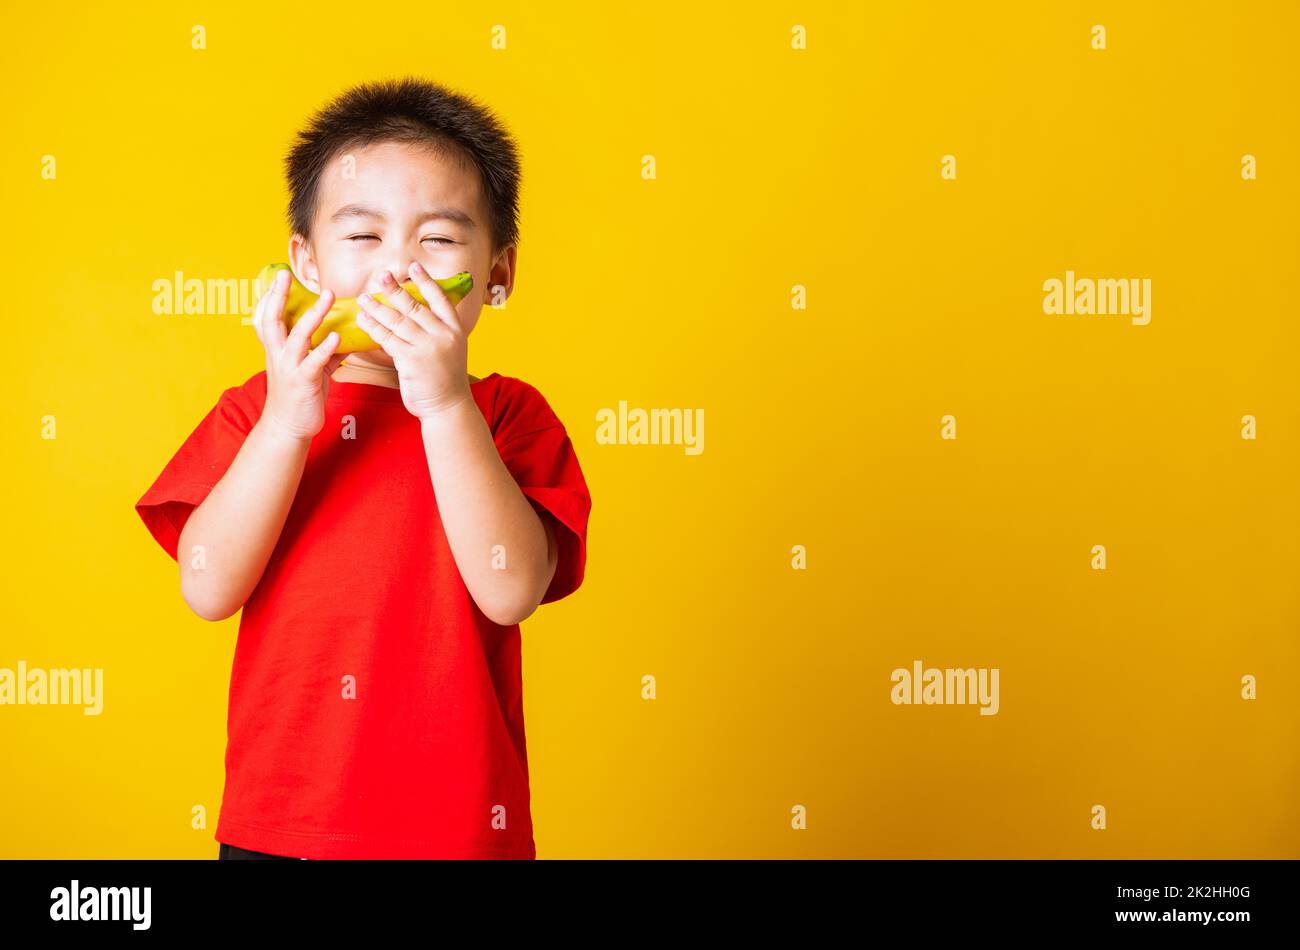 enfant ou enfant mignon petit garçon beau sourire jouant contient des fruits de banane Banque D'Images